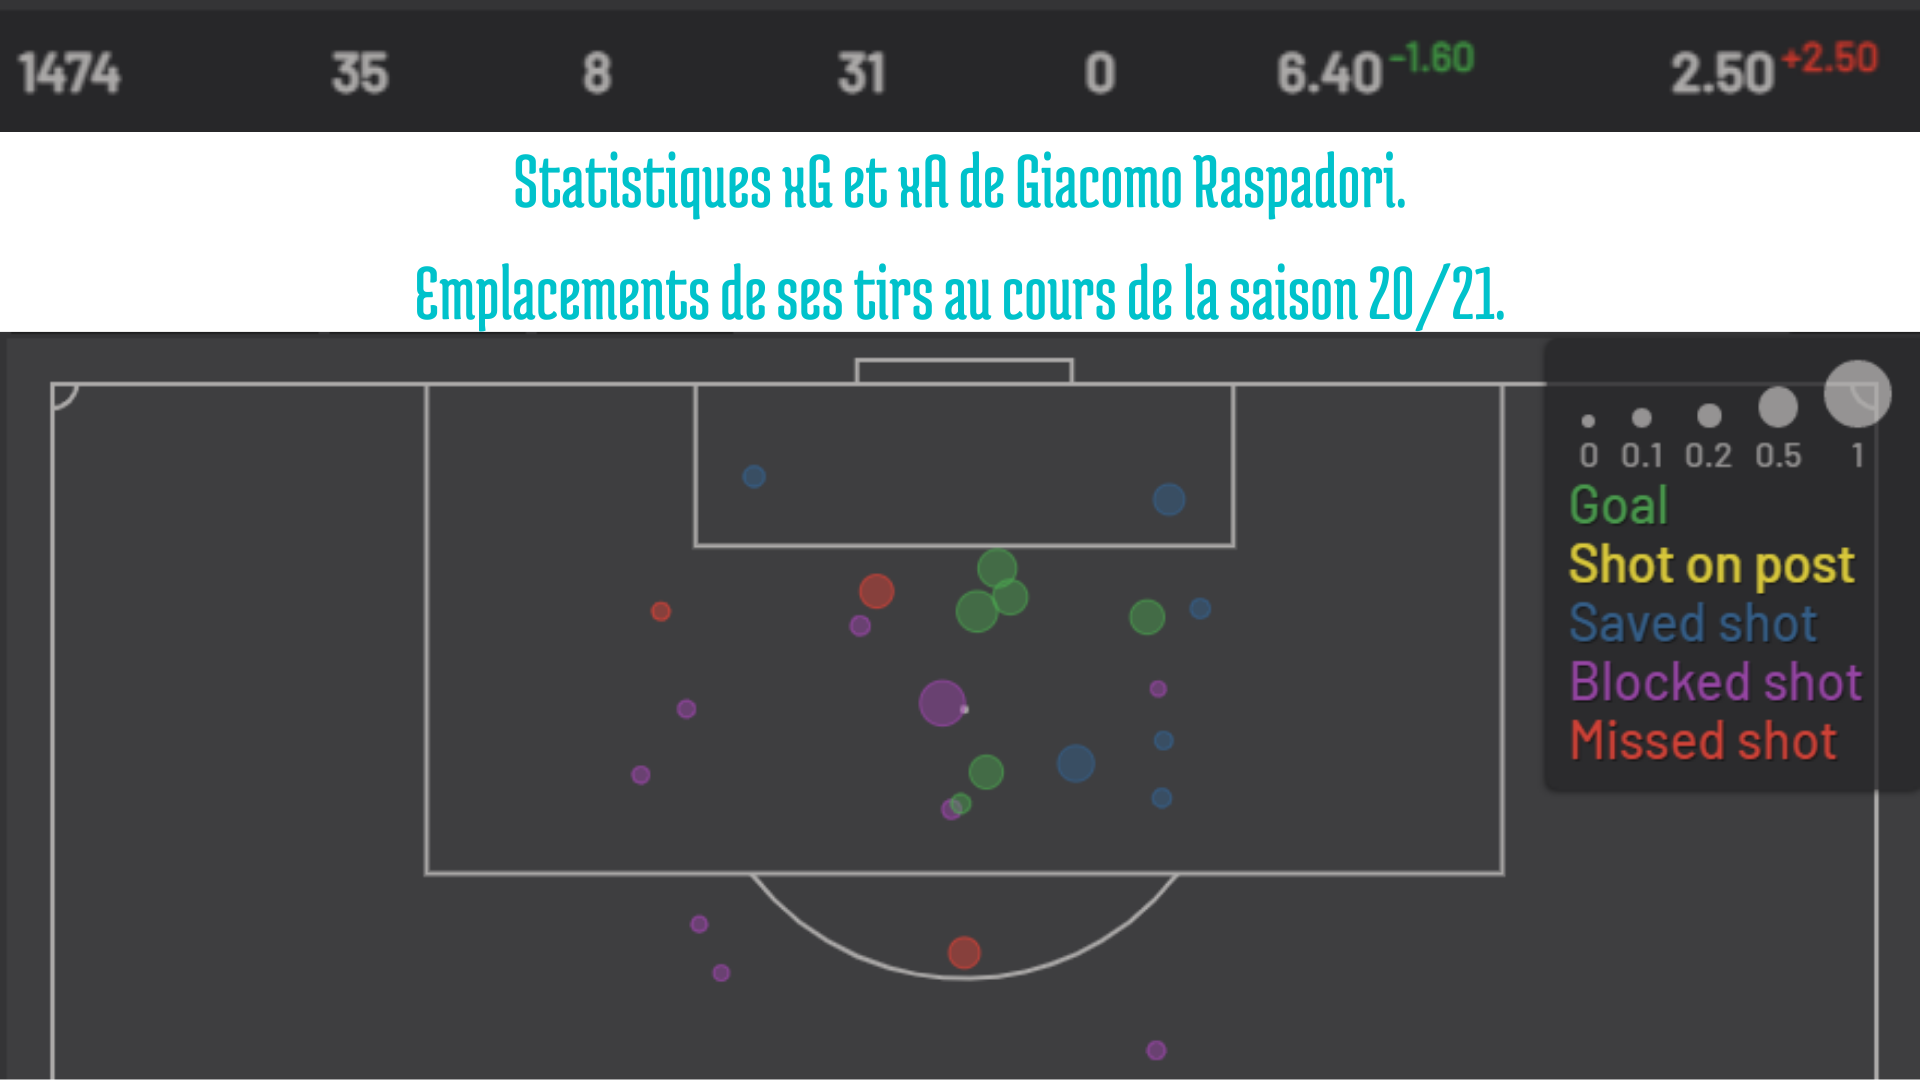 Statistiques de la saison de Raspadori en xG et xA.
Emplacements de ses tirs au cours de la saison. 
Serie A 20/21